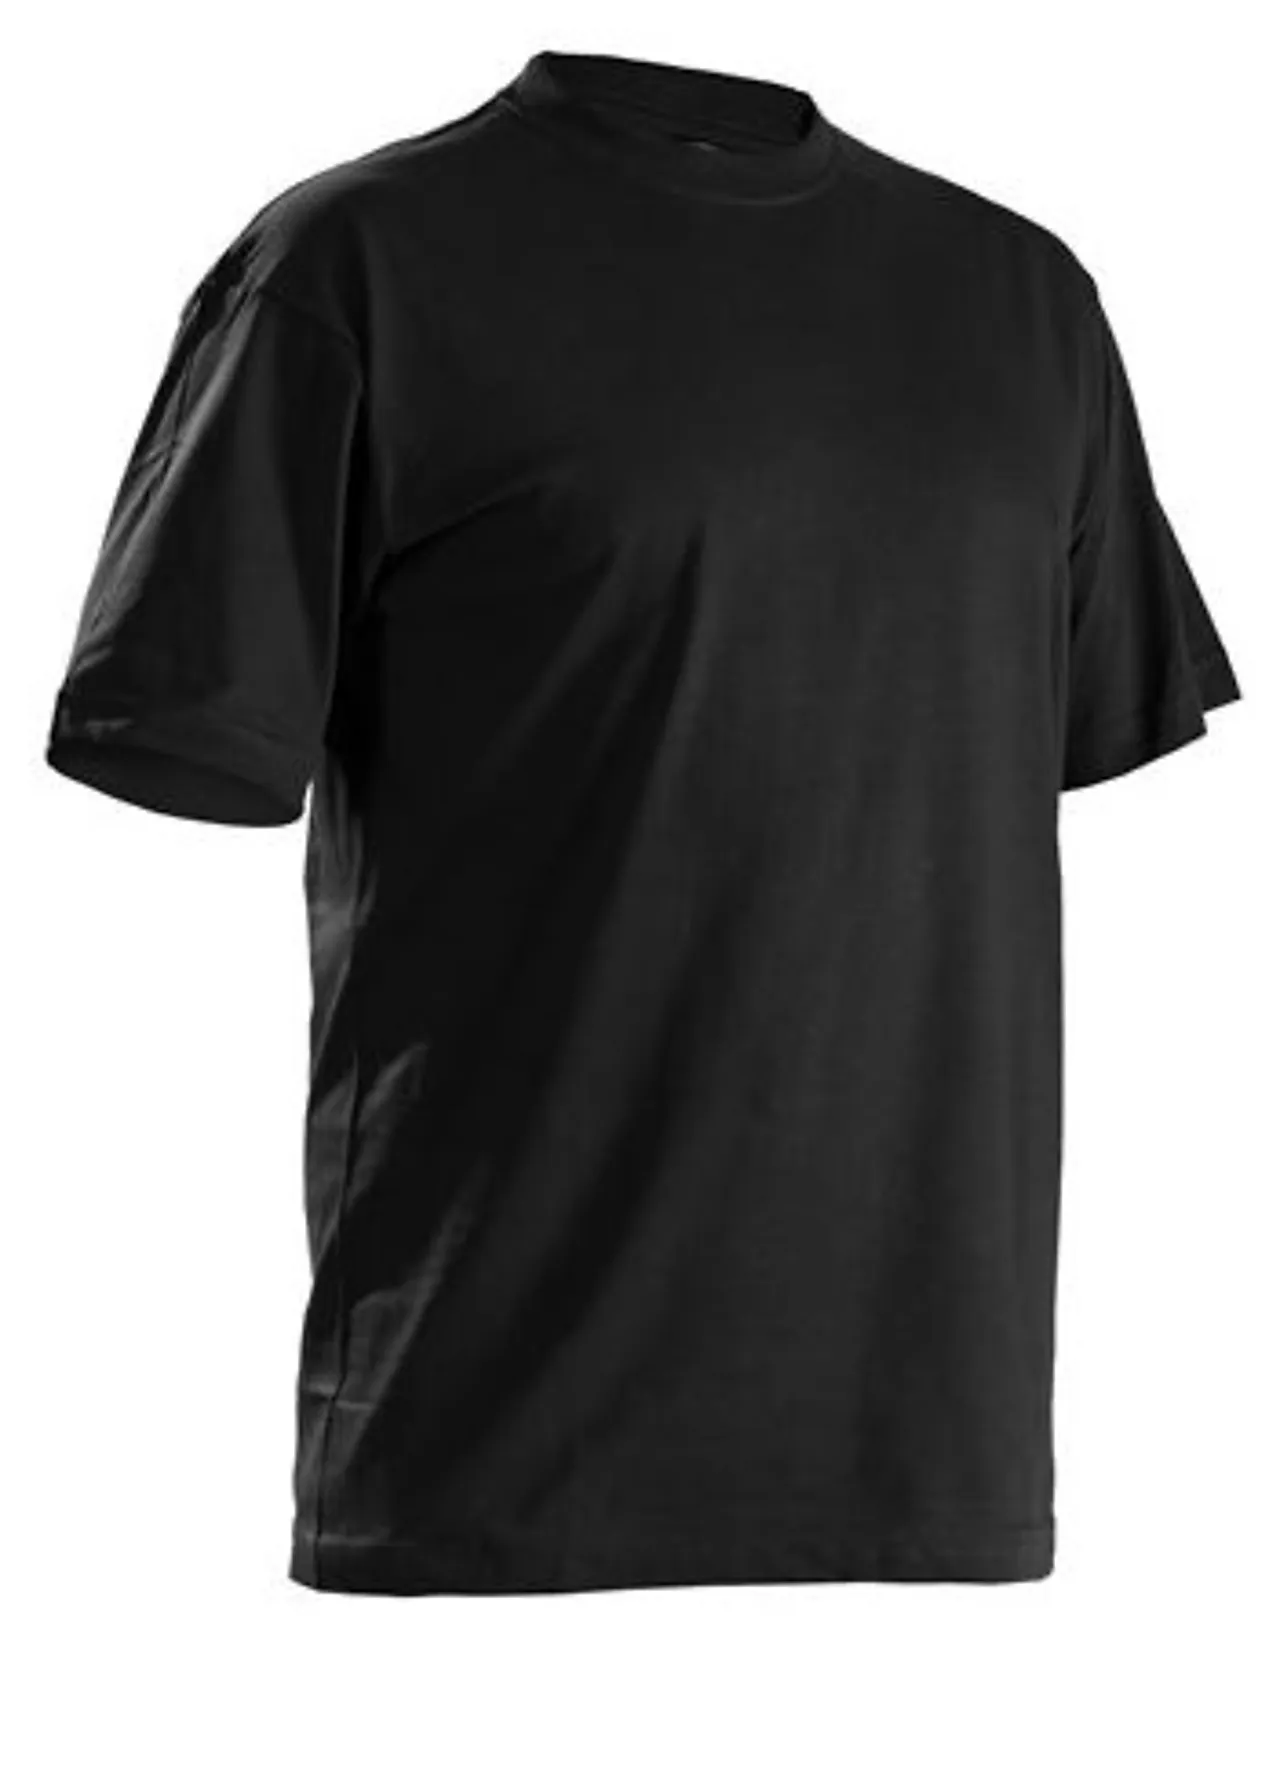 T-skjorte 5 pakk 332510429900s 5 pakk svart null - null - 3 - Miniatyr